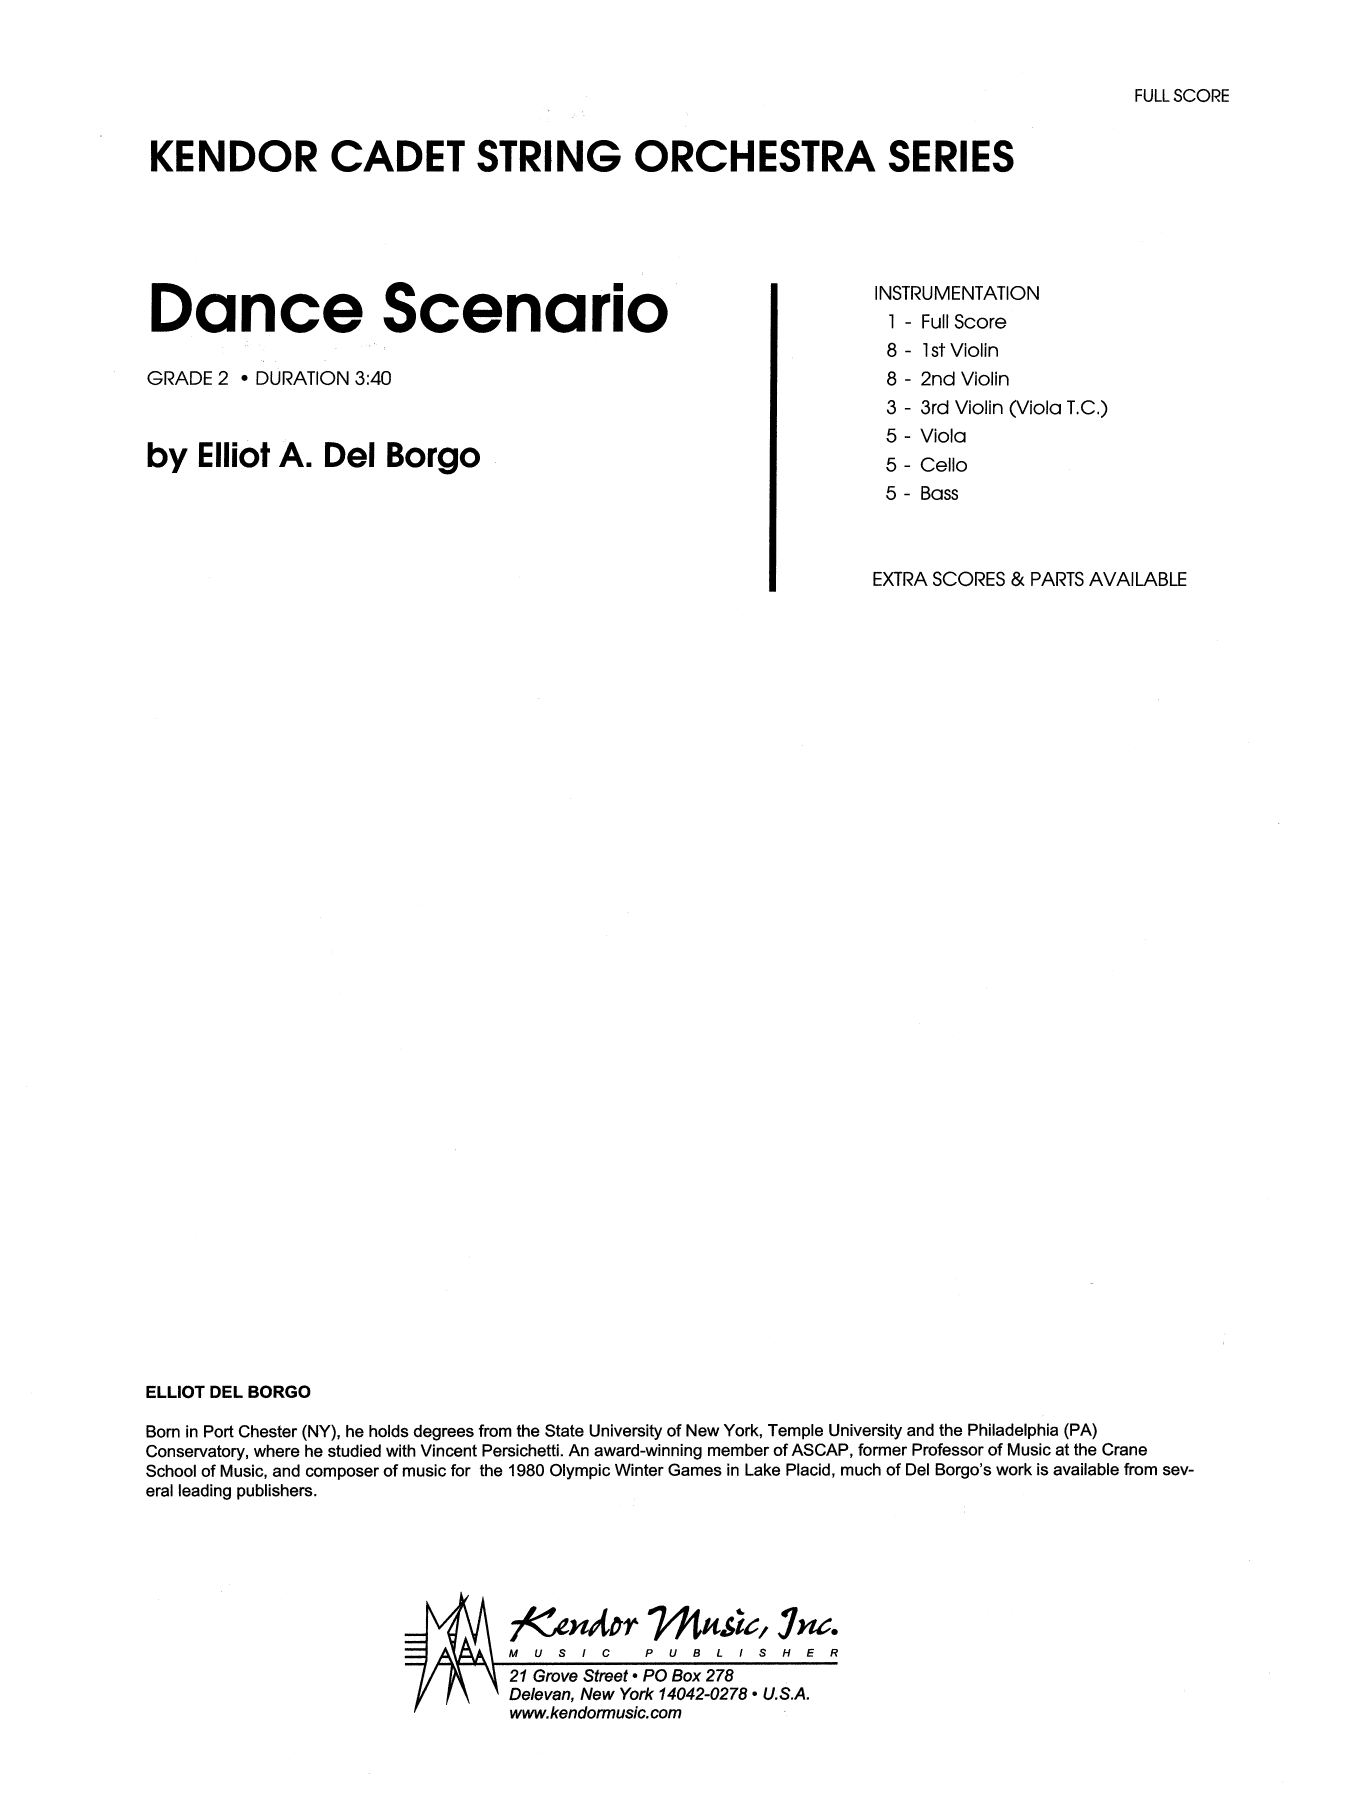 Dance Scenario - Full Score (Orchestra) von Elliot A. Del Borgo